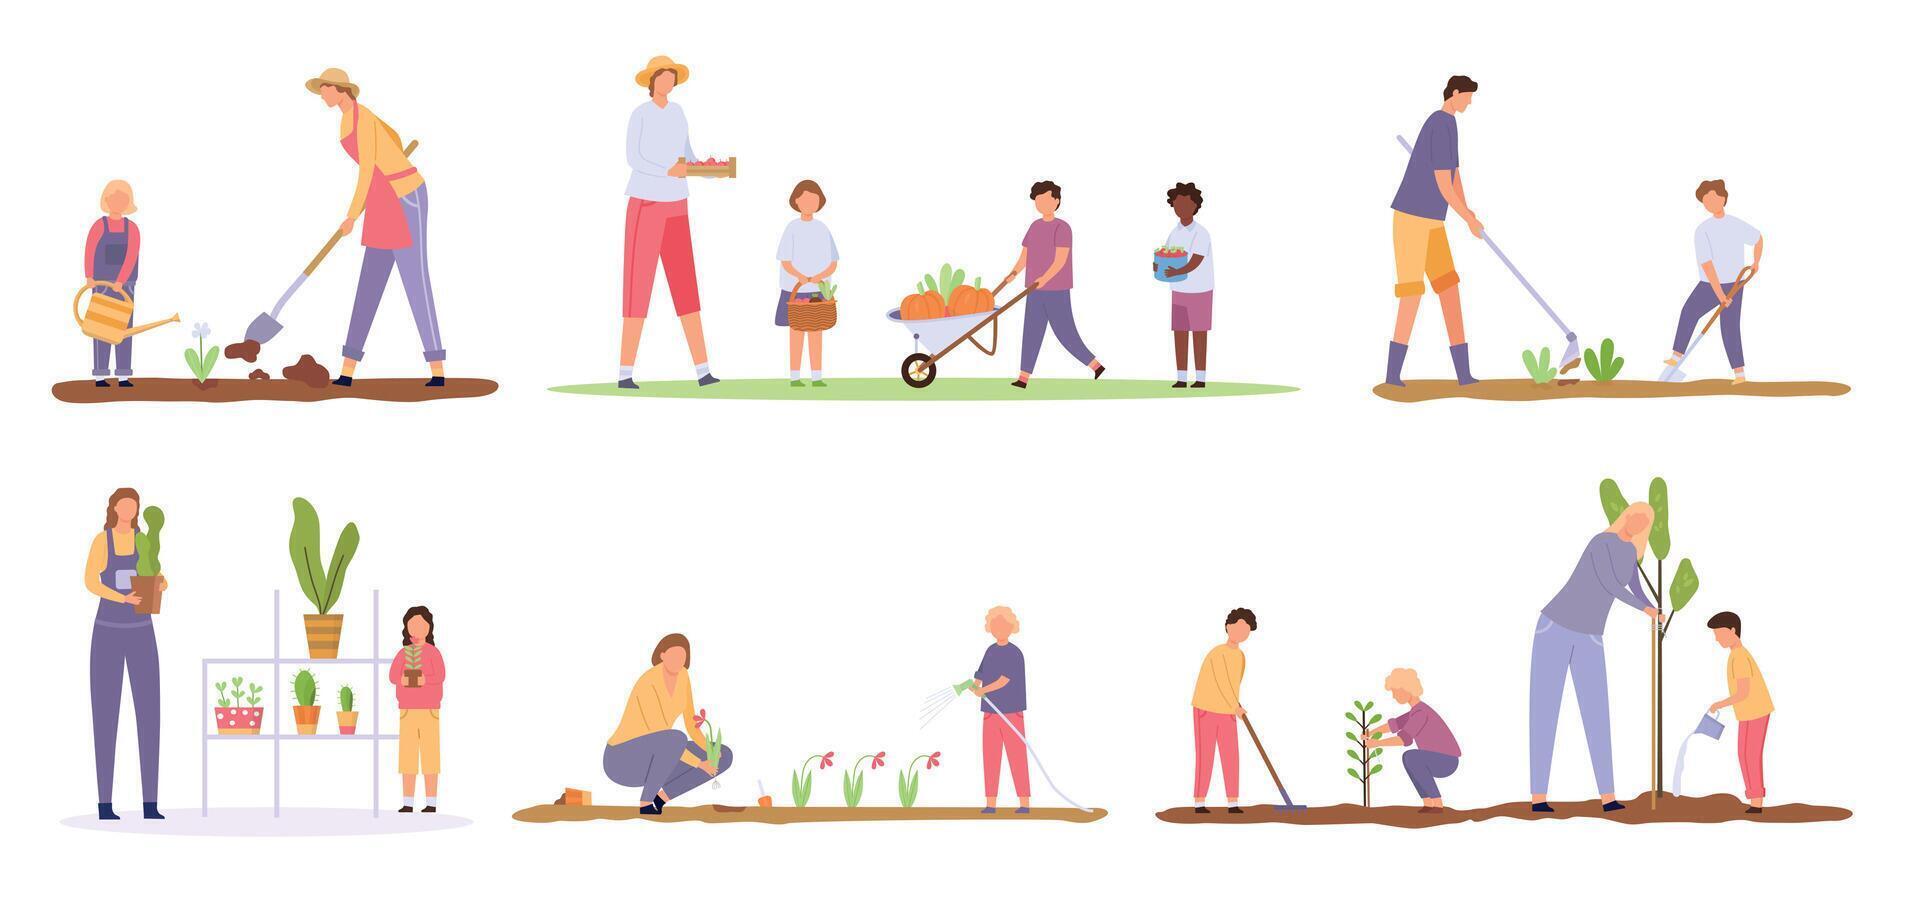 dibujos animados adultos y niños plantando arboles y trabajando a granja. familia crecer planta y flor en jardín. personas cosecha vegetales vector conjunto